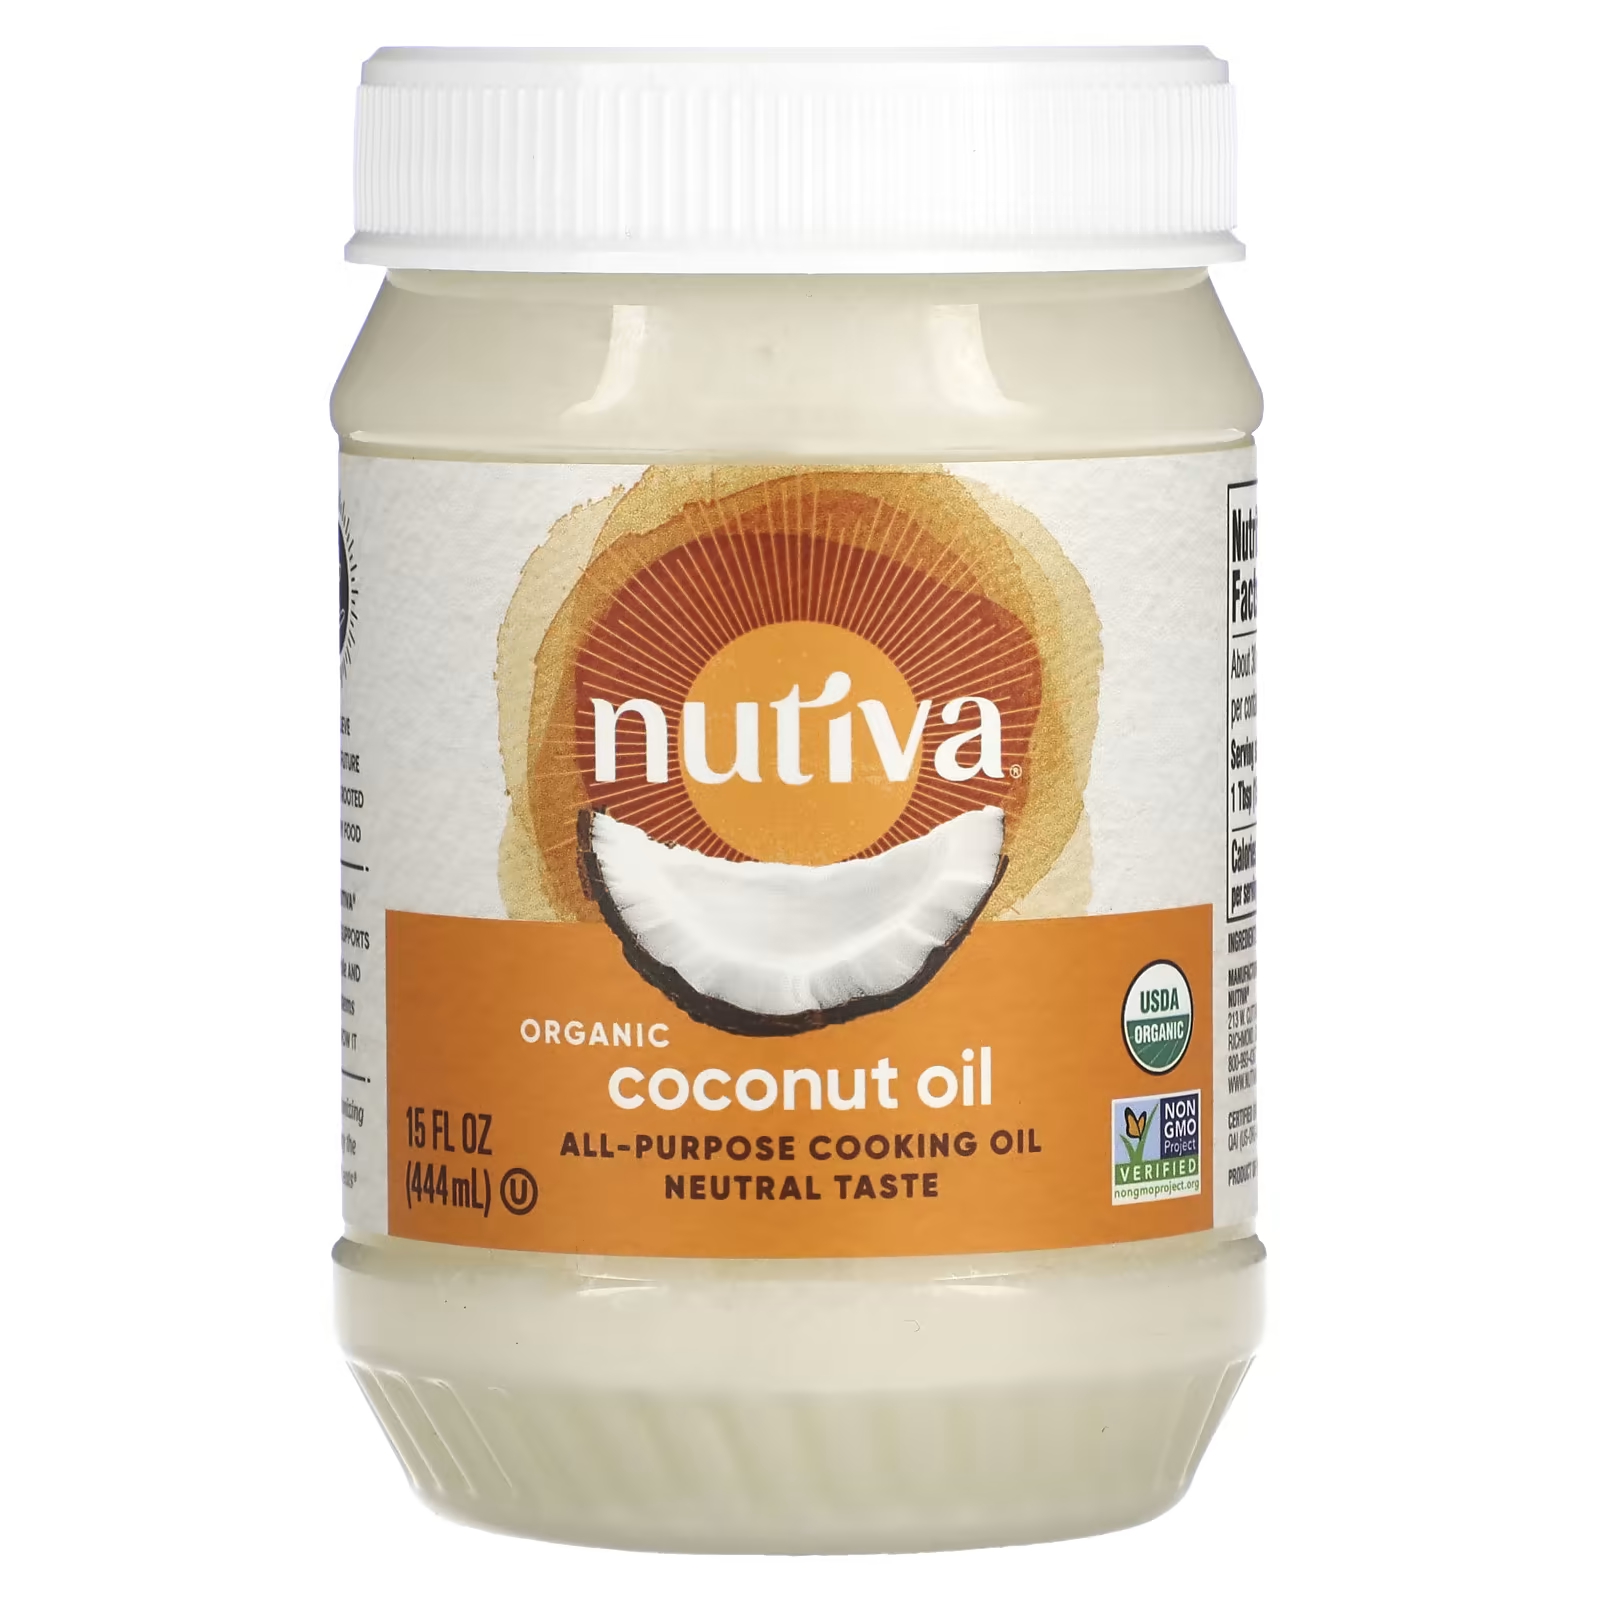 Универсальное кулинарное масло, органическое кокосовое масло, 15 жидких унций (444 мл) Nutiva